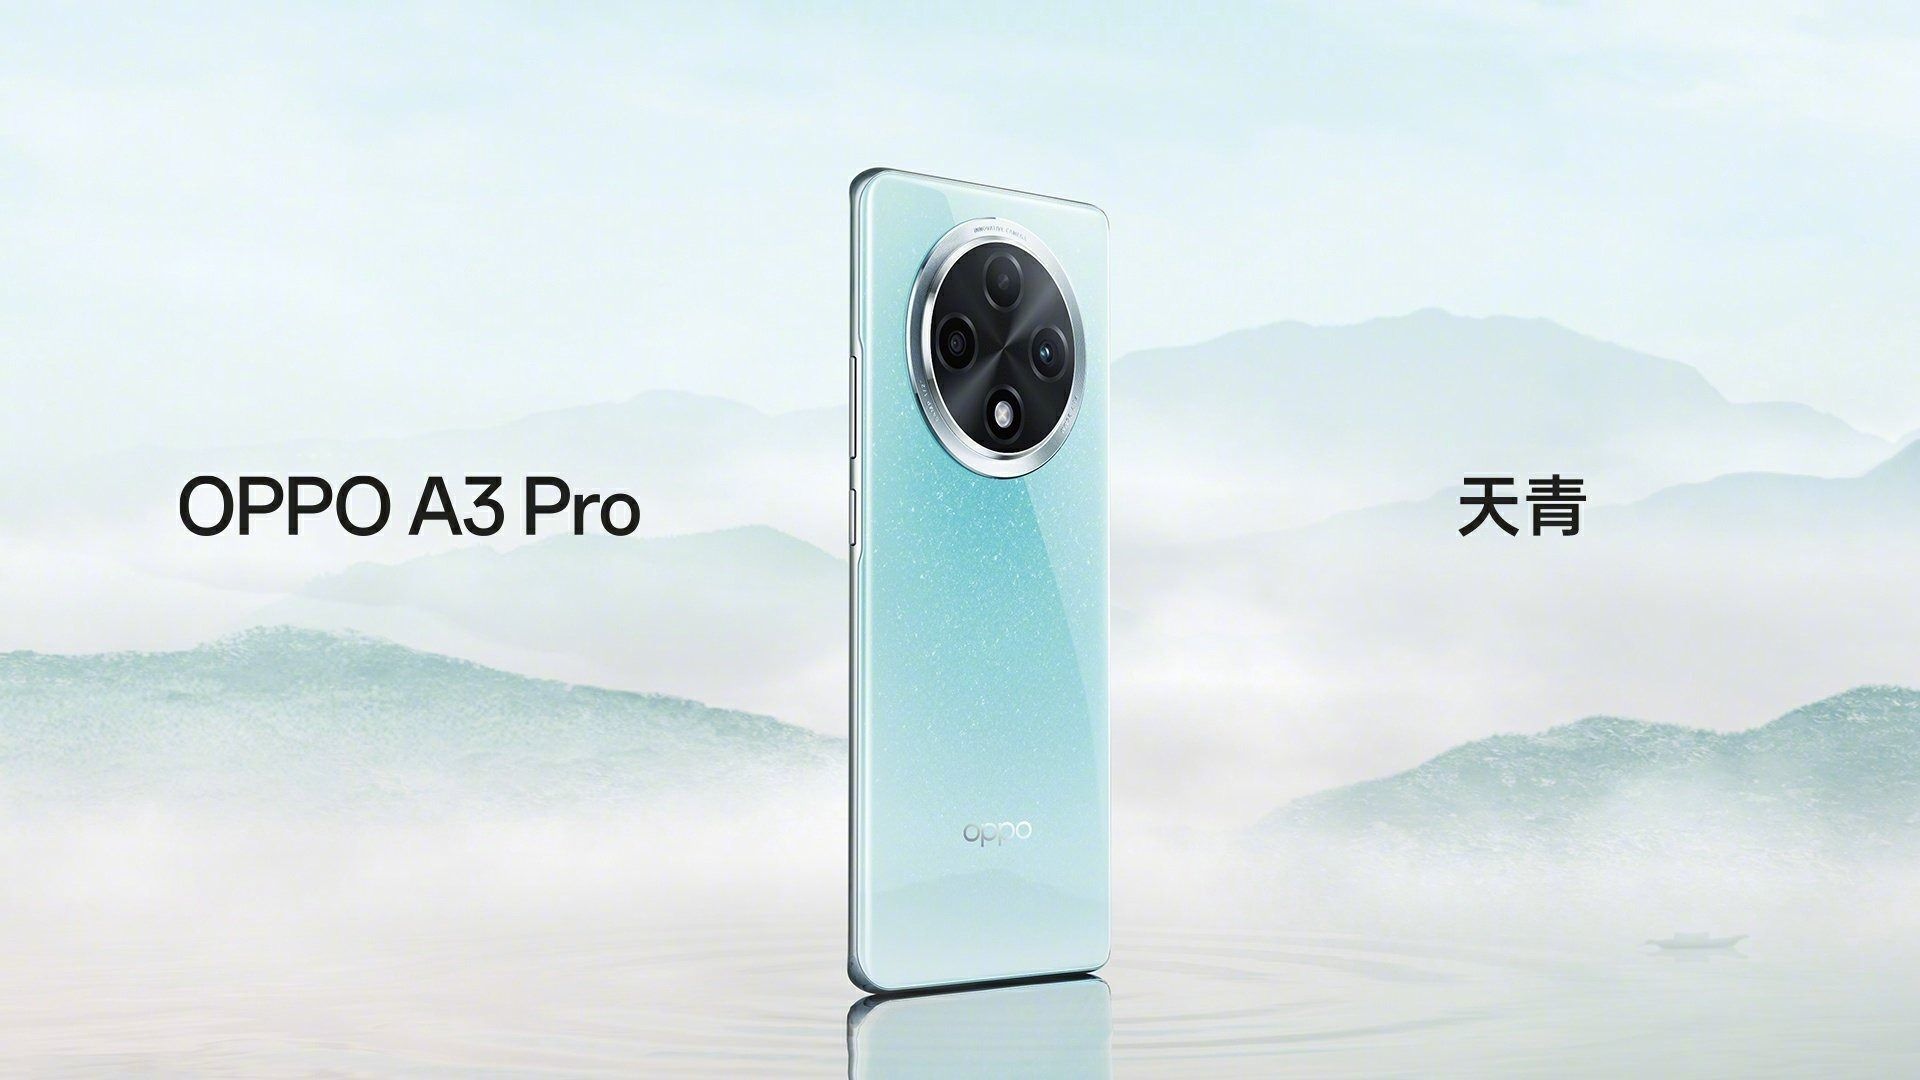 پوستر رسمی گوشی اوپو مدل A3 Pro 5g در رنگ Azure